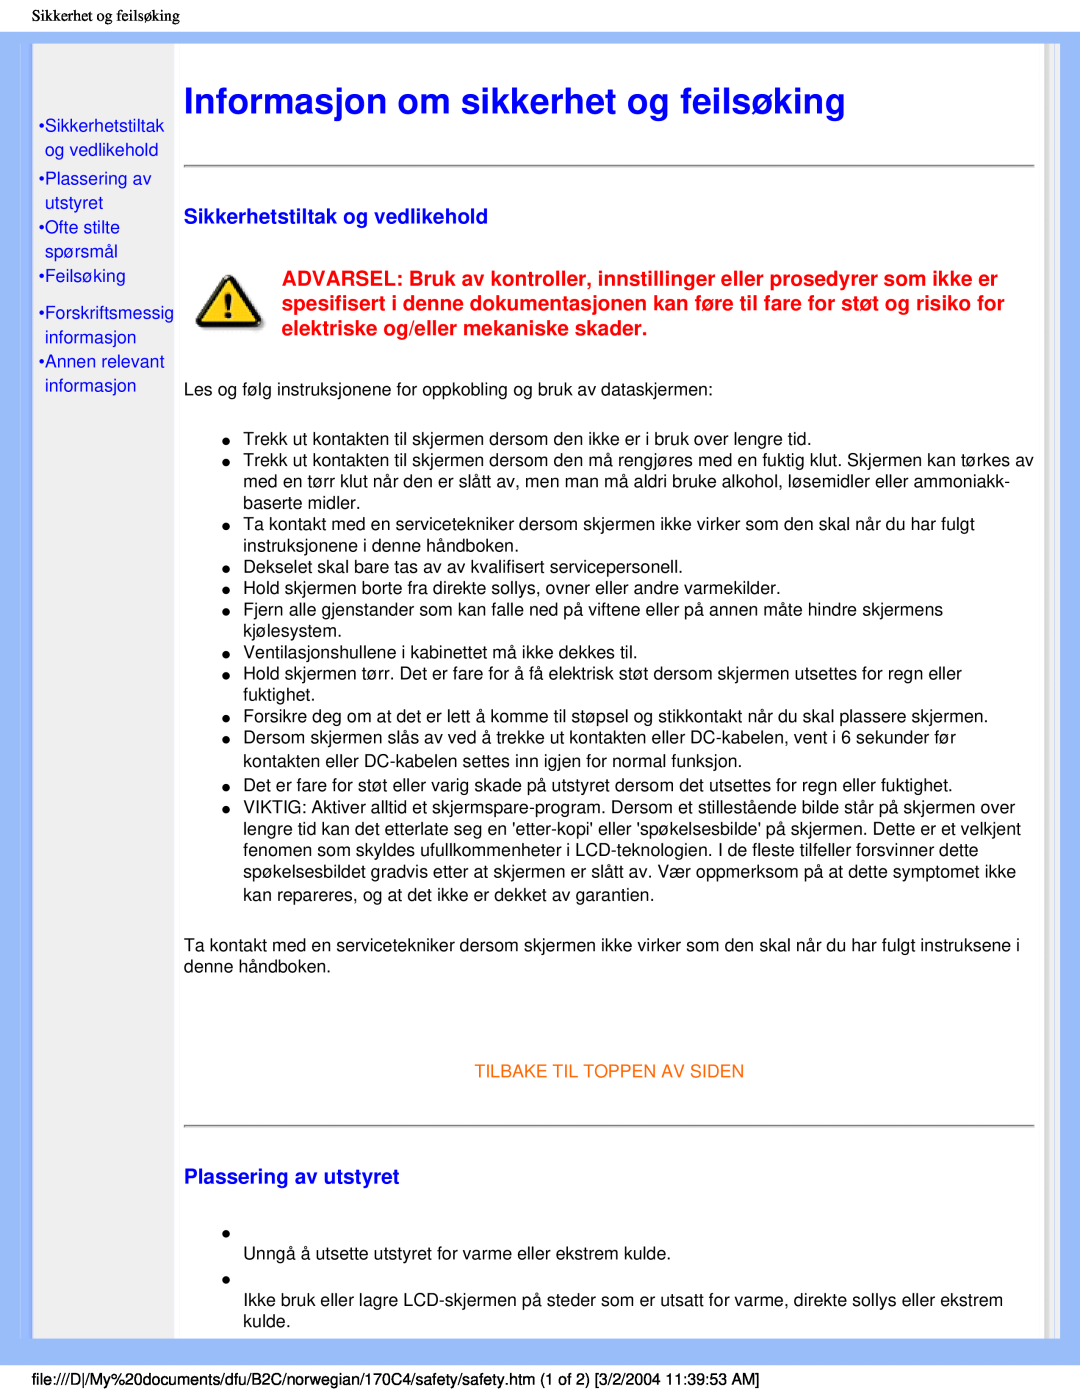 Philips 170C4 user manual Informasjon om sikkerhet og feilsøking, Sikkerhetstiltak og vedlikehold, Plassering av utstyret 